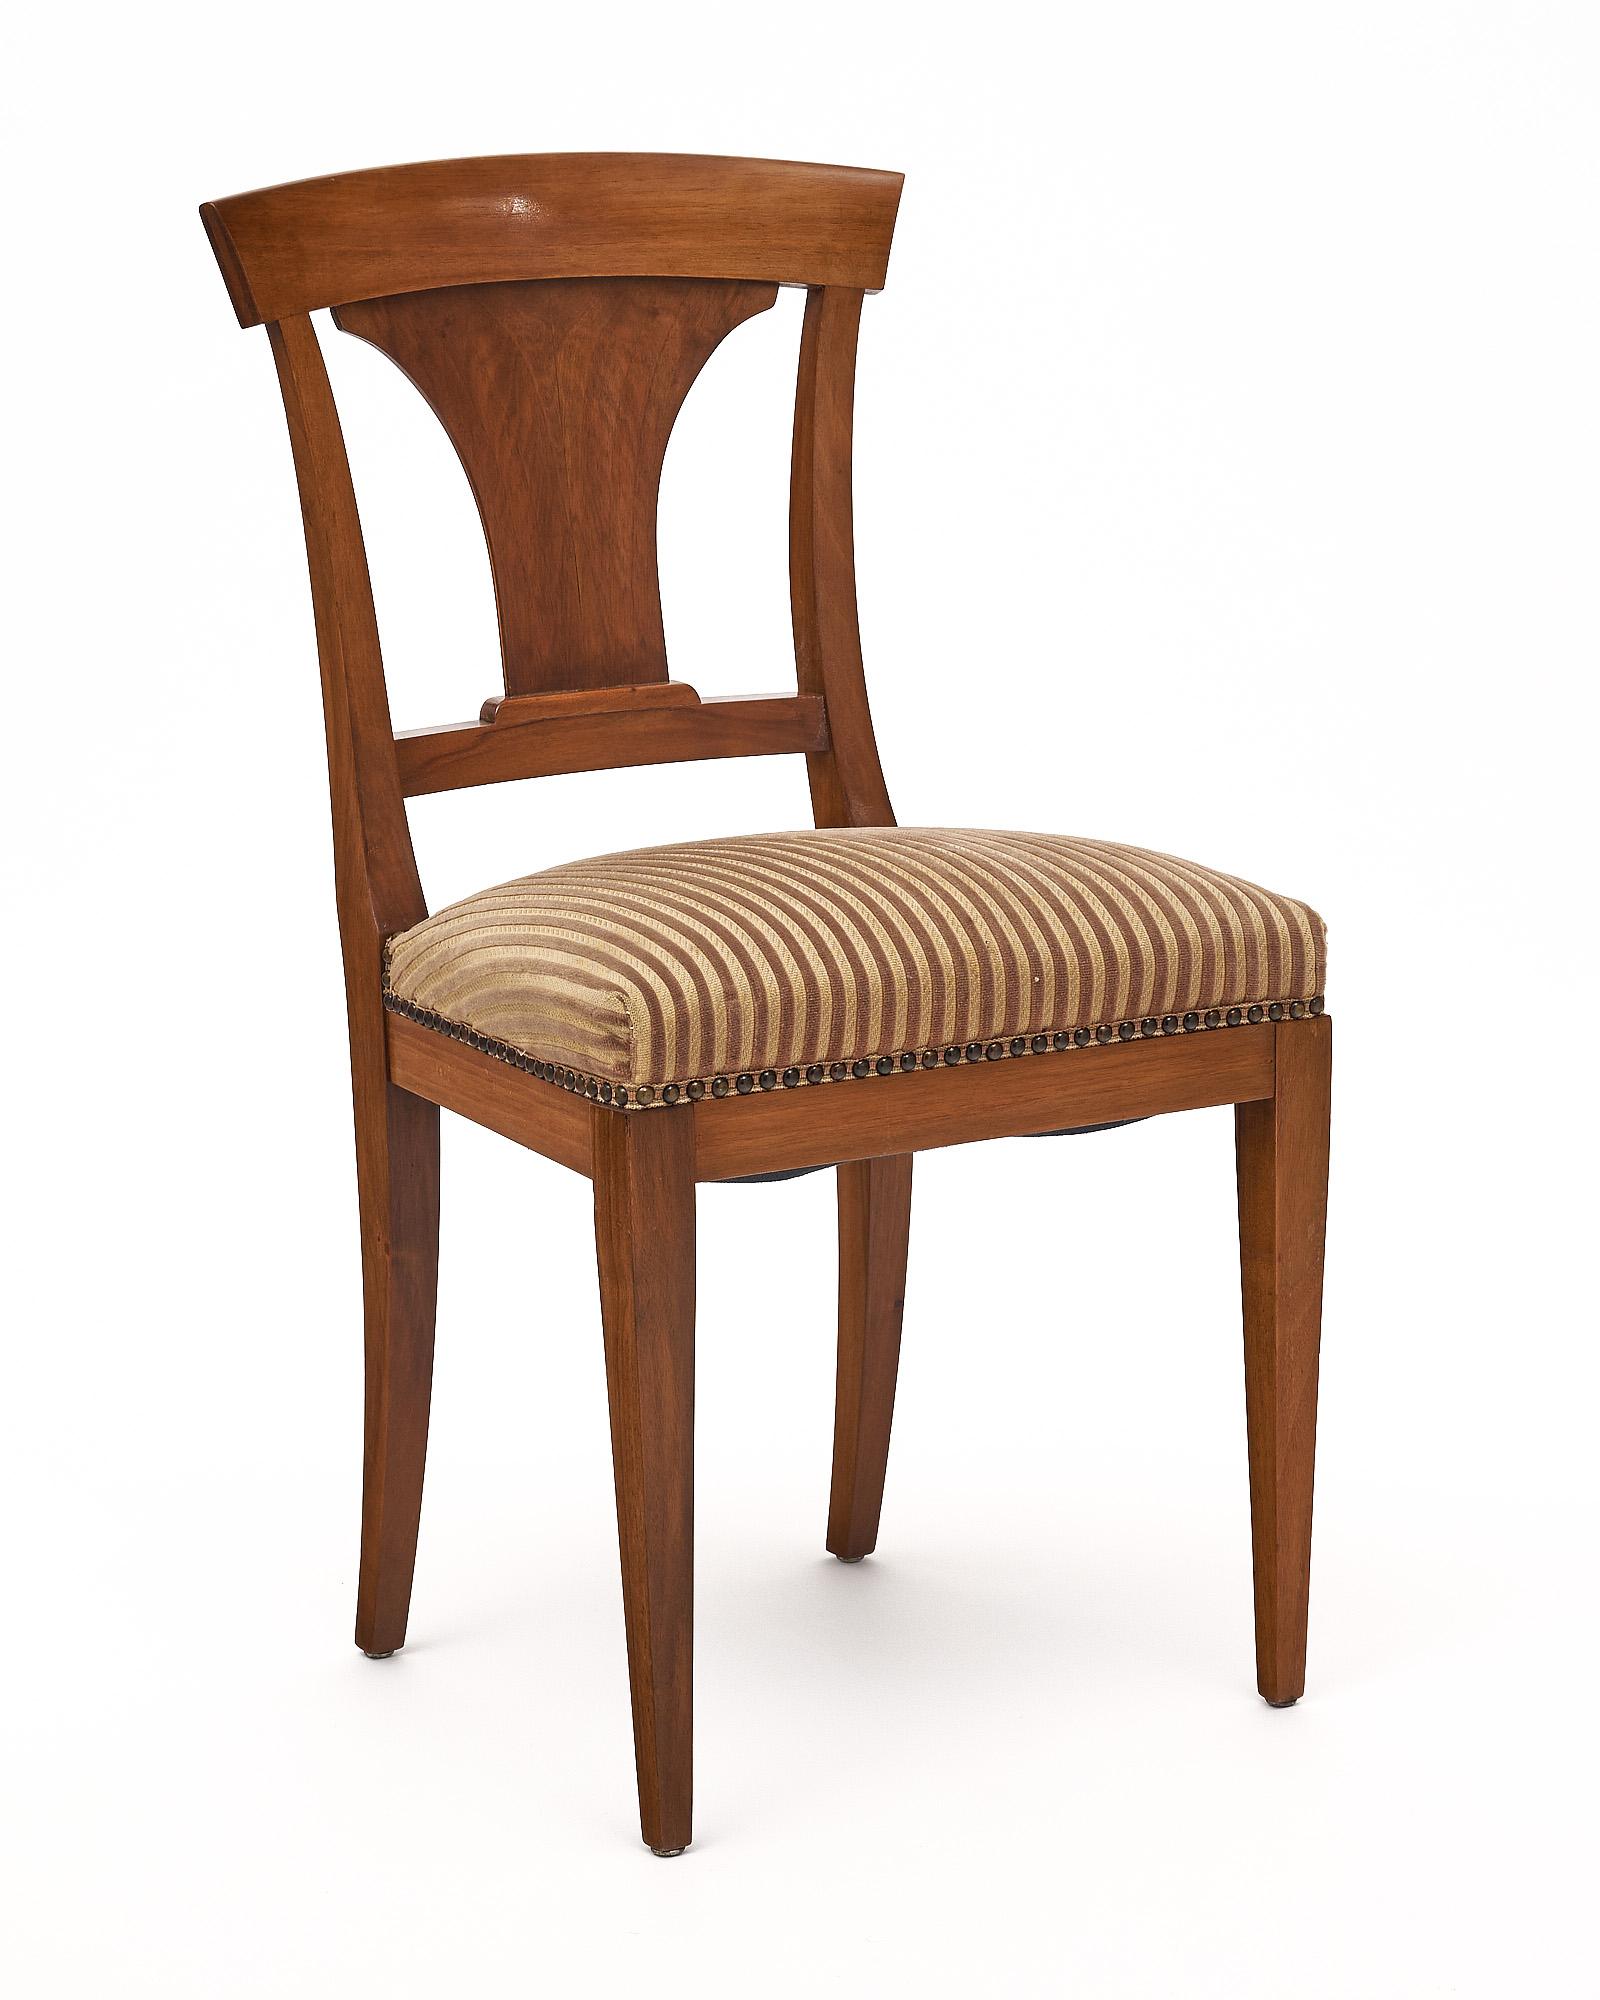 Conjunto de seis sillas de comedor fabricadas con estructura de nogal y tapicería original. Se han acabado con un lustroso pulido francés de calidad de museo. La tapicería está adornada con tachuelas de latón alrededor de la base de los asientos.